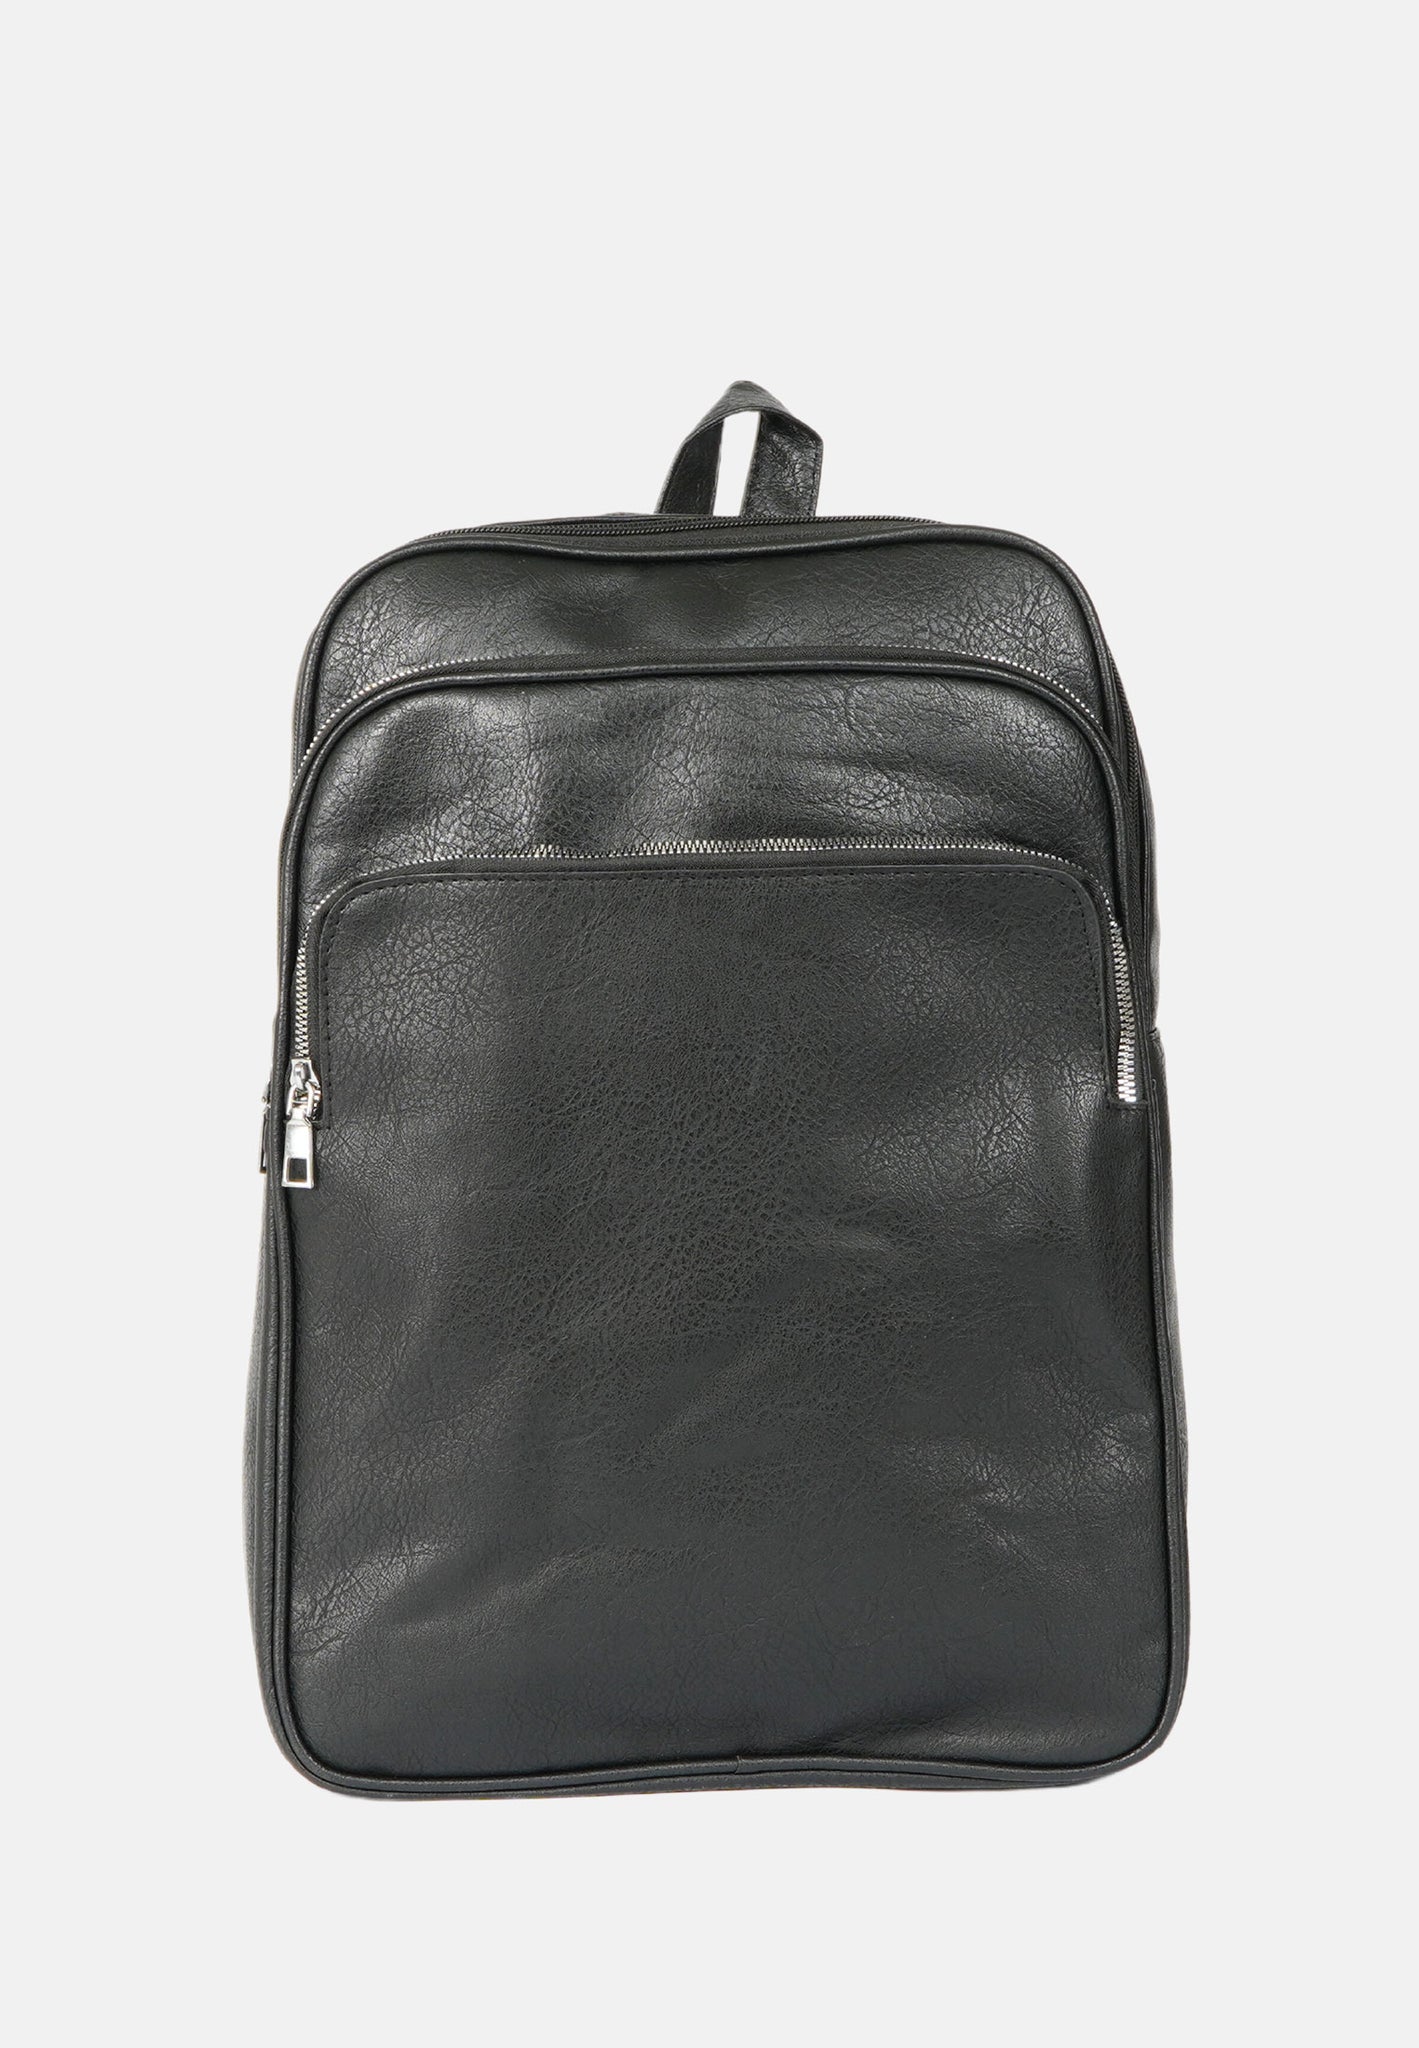 Multi-pocket backpack for 13 inch laptop